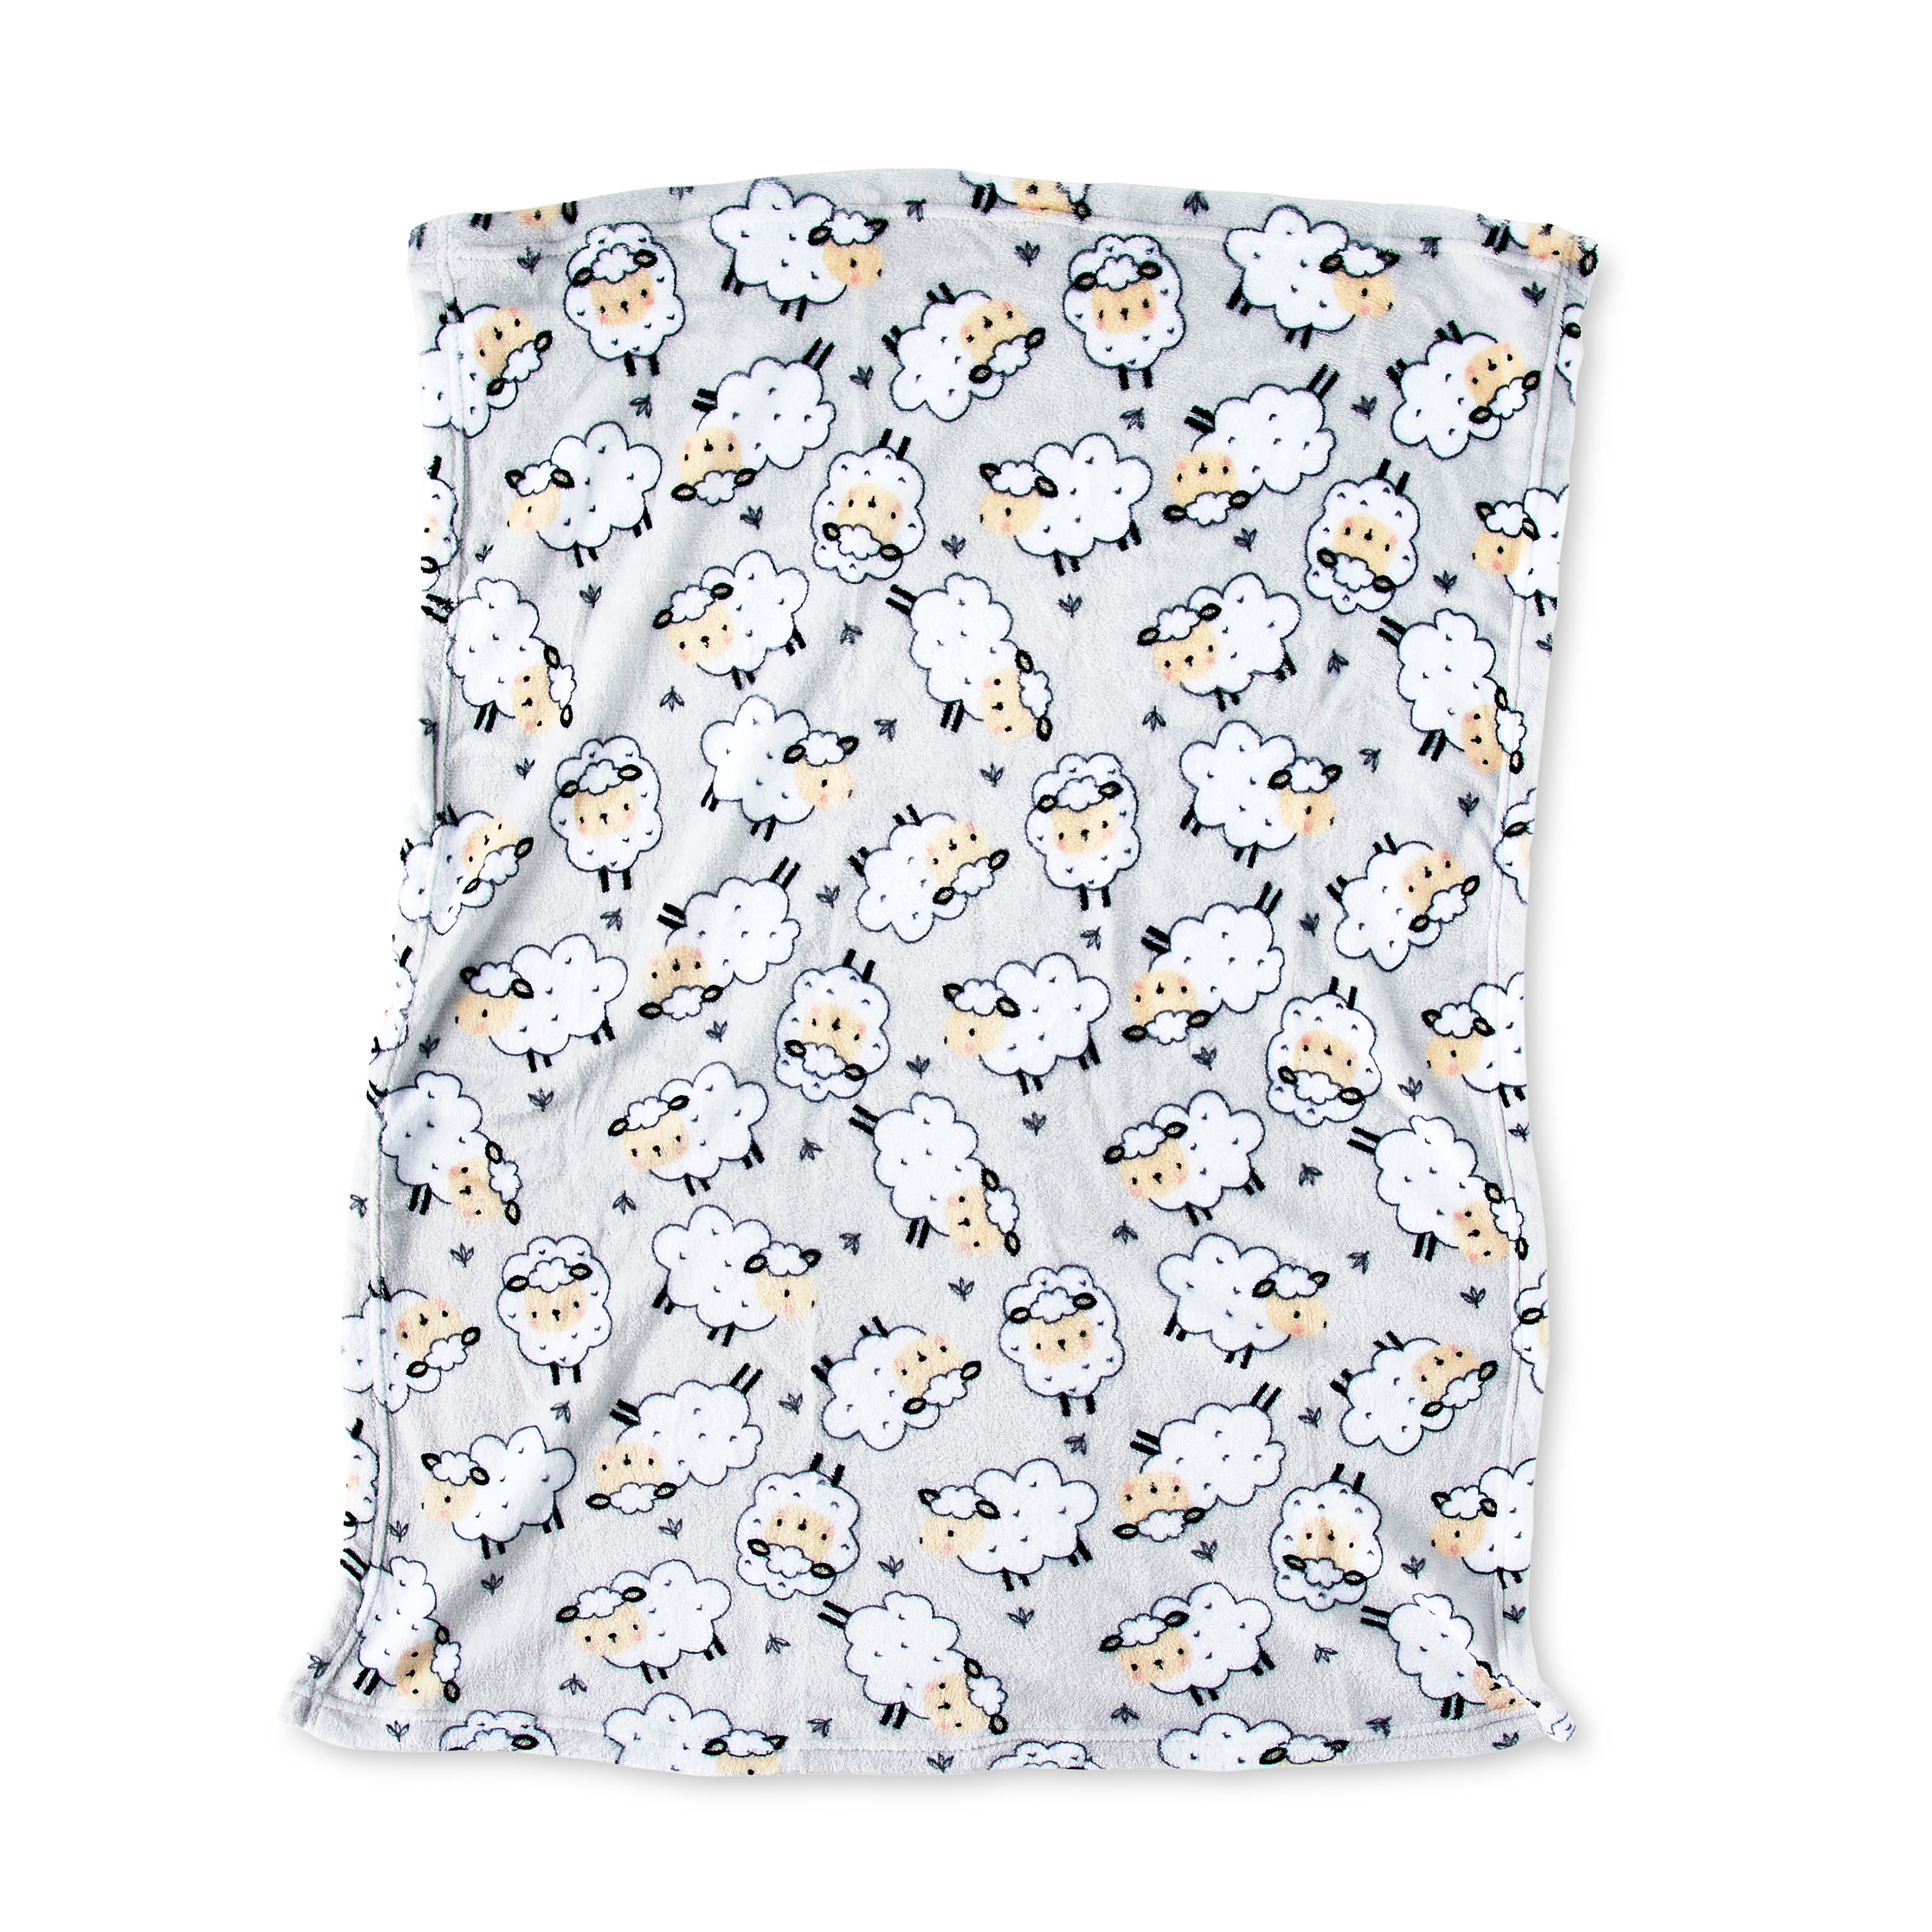 Parent's Choice Grey Sheep Plush Baby Blanket,Infant Unisex, 30" x 36" - image 4 of 8